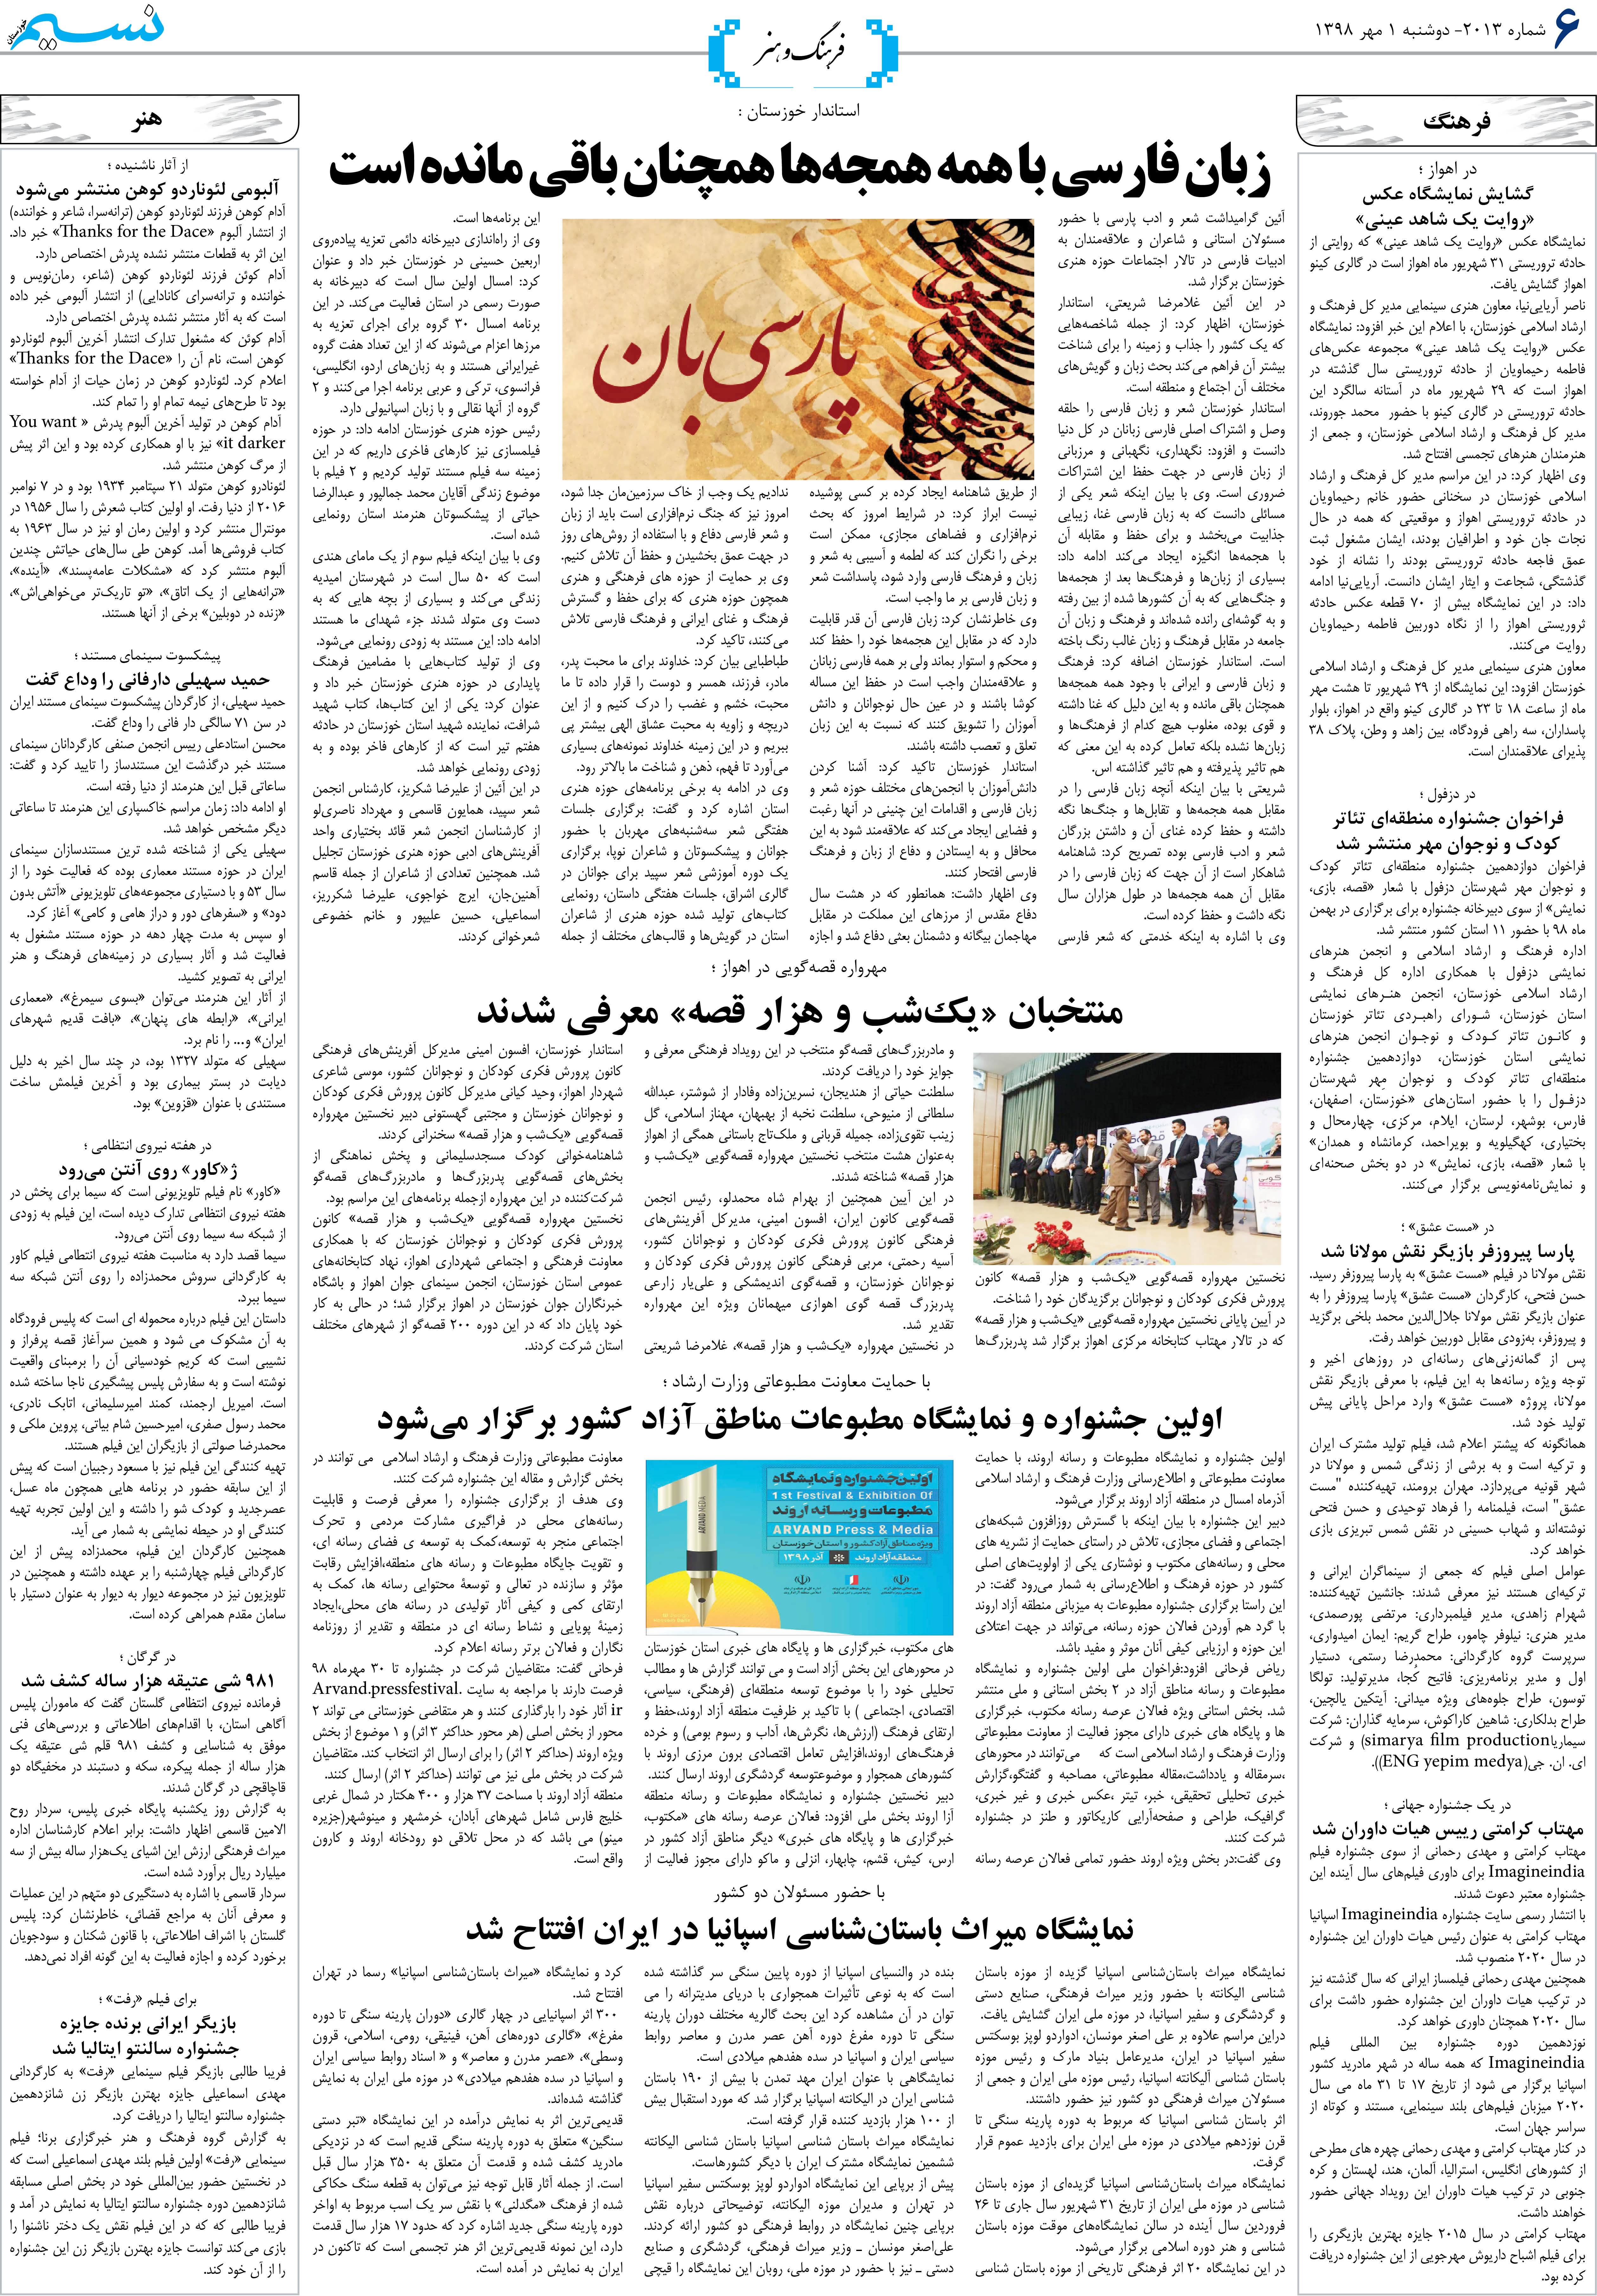 صفحه فرهنگ و هنر روزنامه نسیم شماره 2013